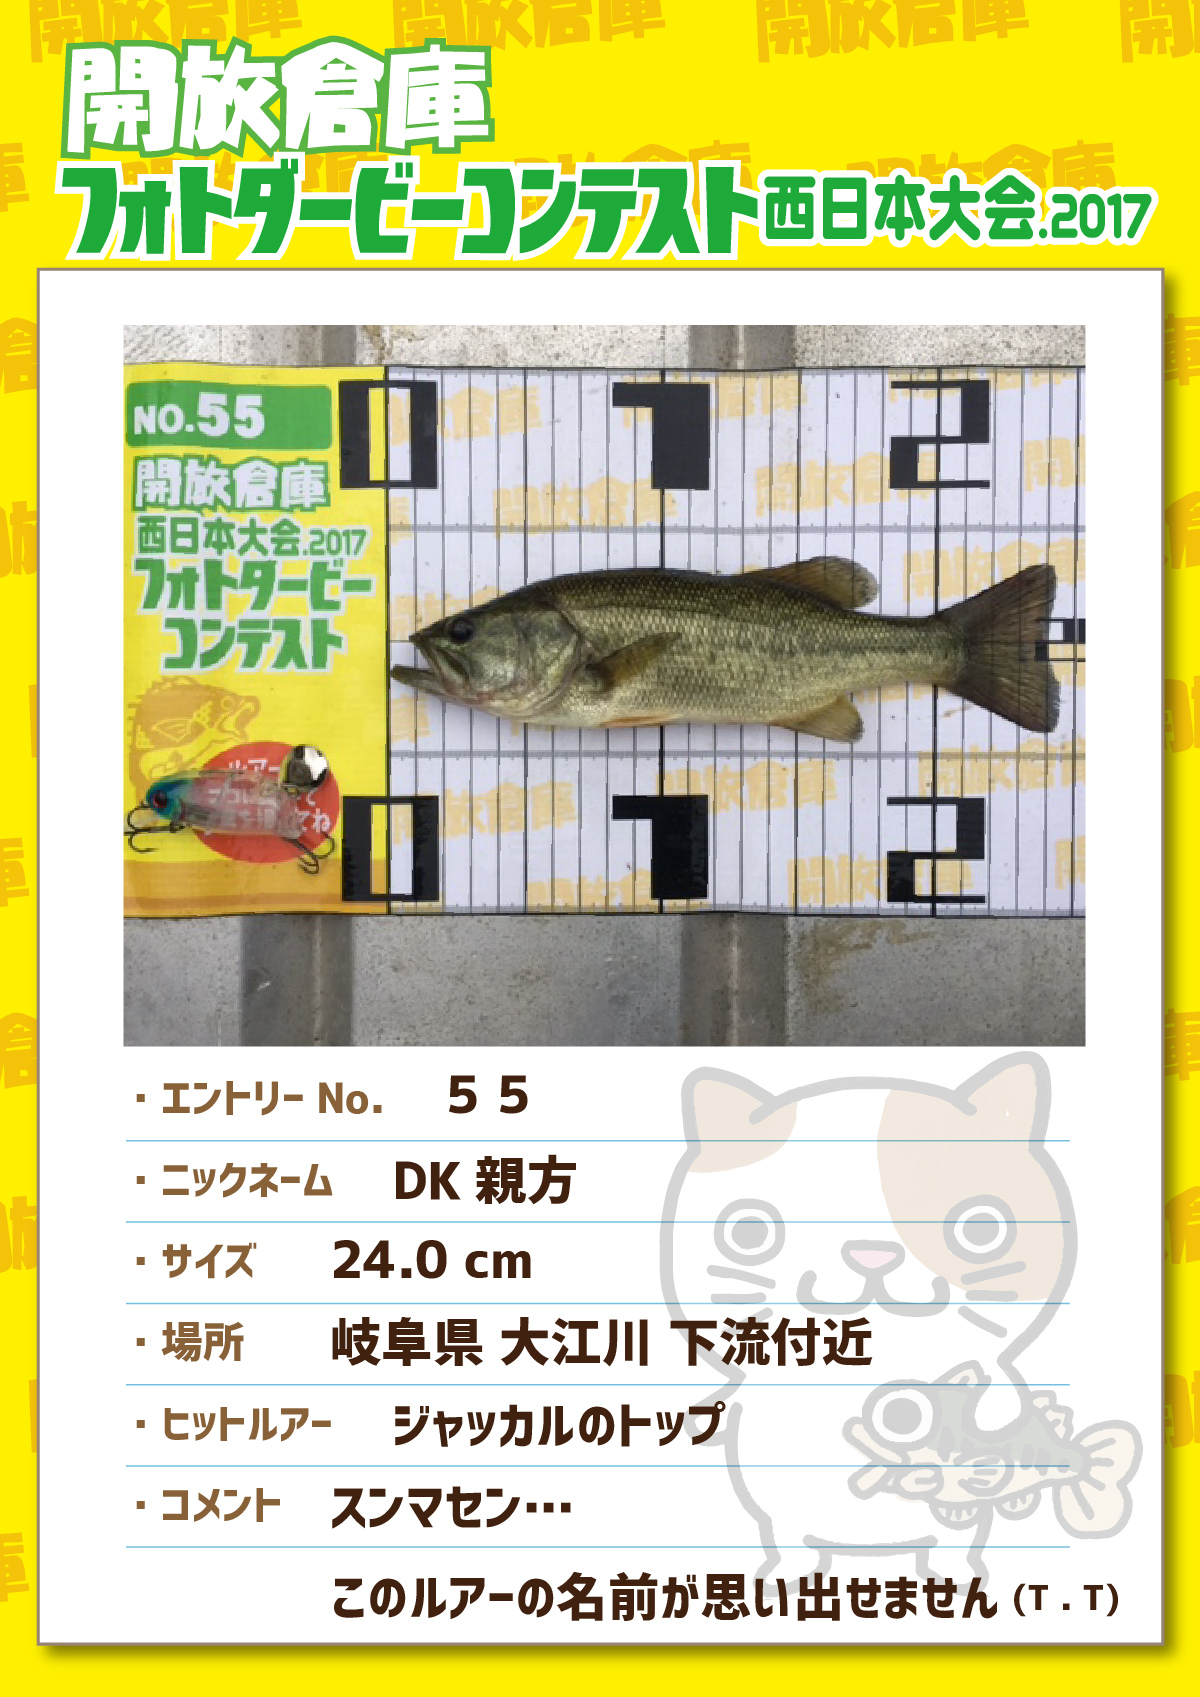 No.055 DK親方 24.0cm 岐阜県大江川下流付近 ジャッカルのトップ スンマセン…このルアーの名前が思い出せません。